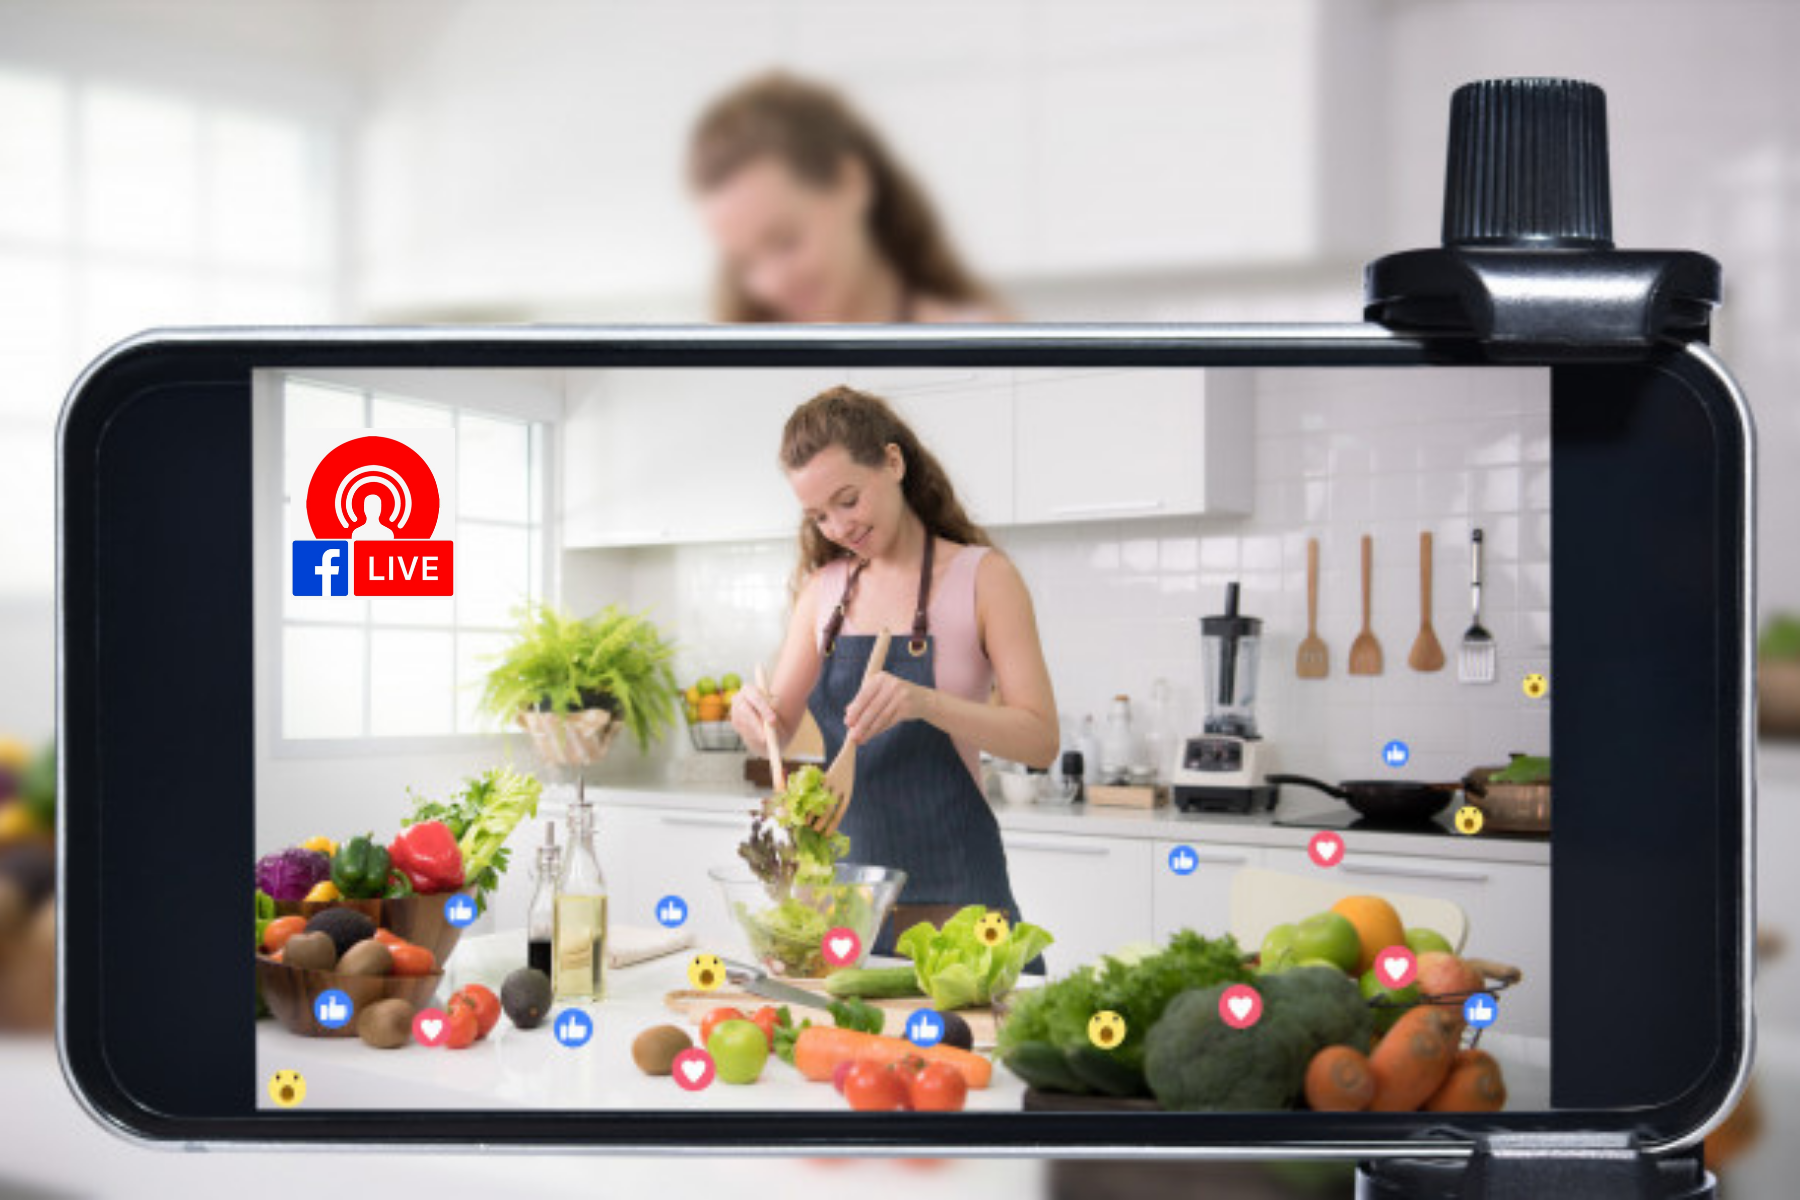 Facebook live video. Ali ako niste stidljivi kamere, onda ste u velikoj prednosti. Facebook Live može biti još jedan zabavan način za izgradnju ličnog brenda. Možete da emitujete uživo video na kome pokazujete kako radite od kuće ili kako koristite vaš proizvod u realnom vremenu.